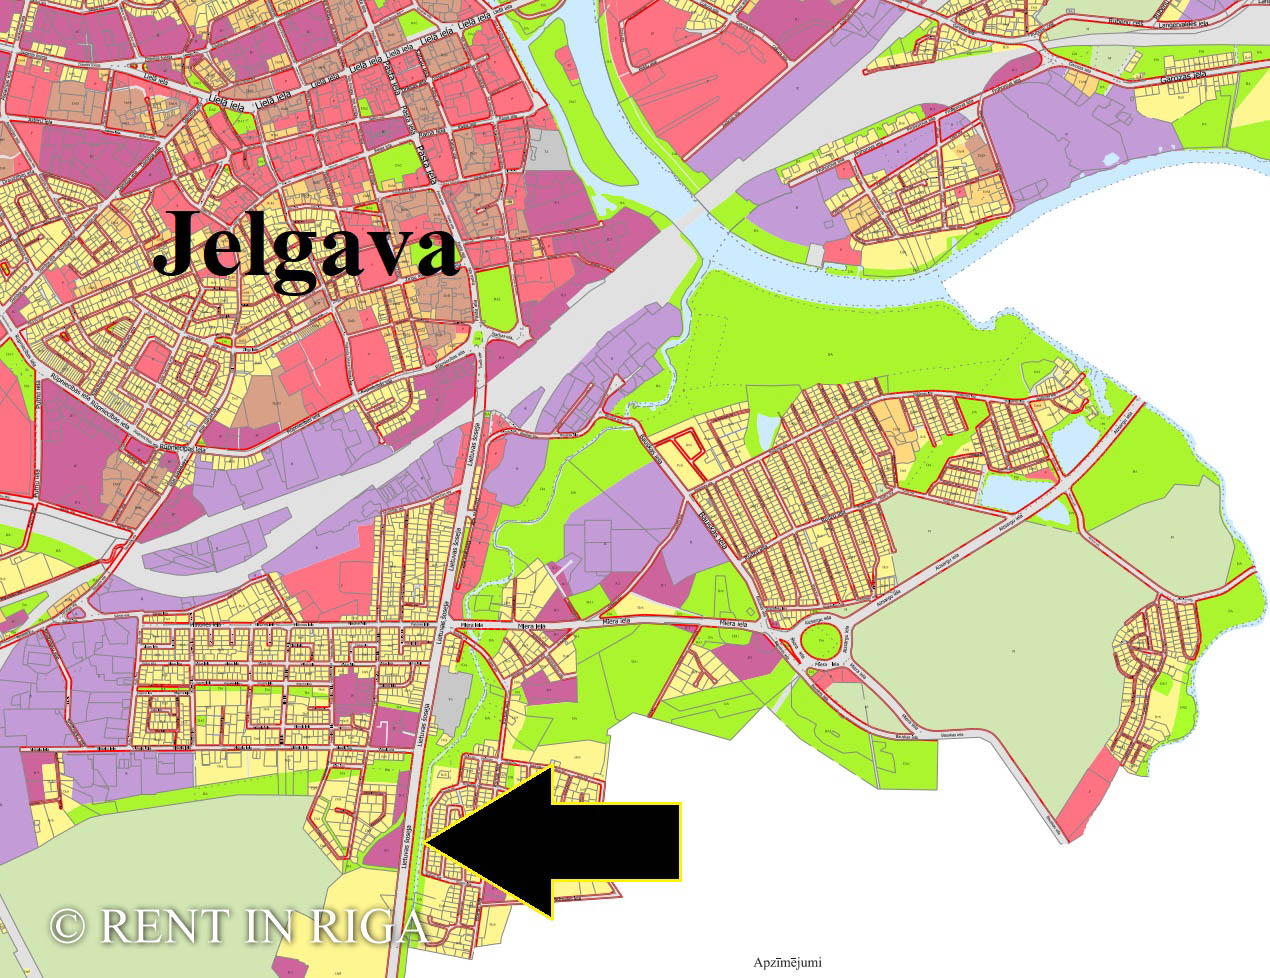 Продают земельный участок, Lietuvas Šoseja - Изображение 1